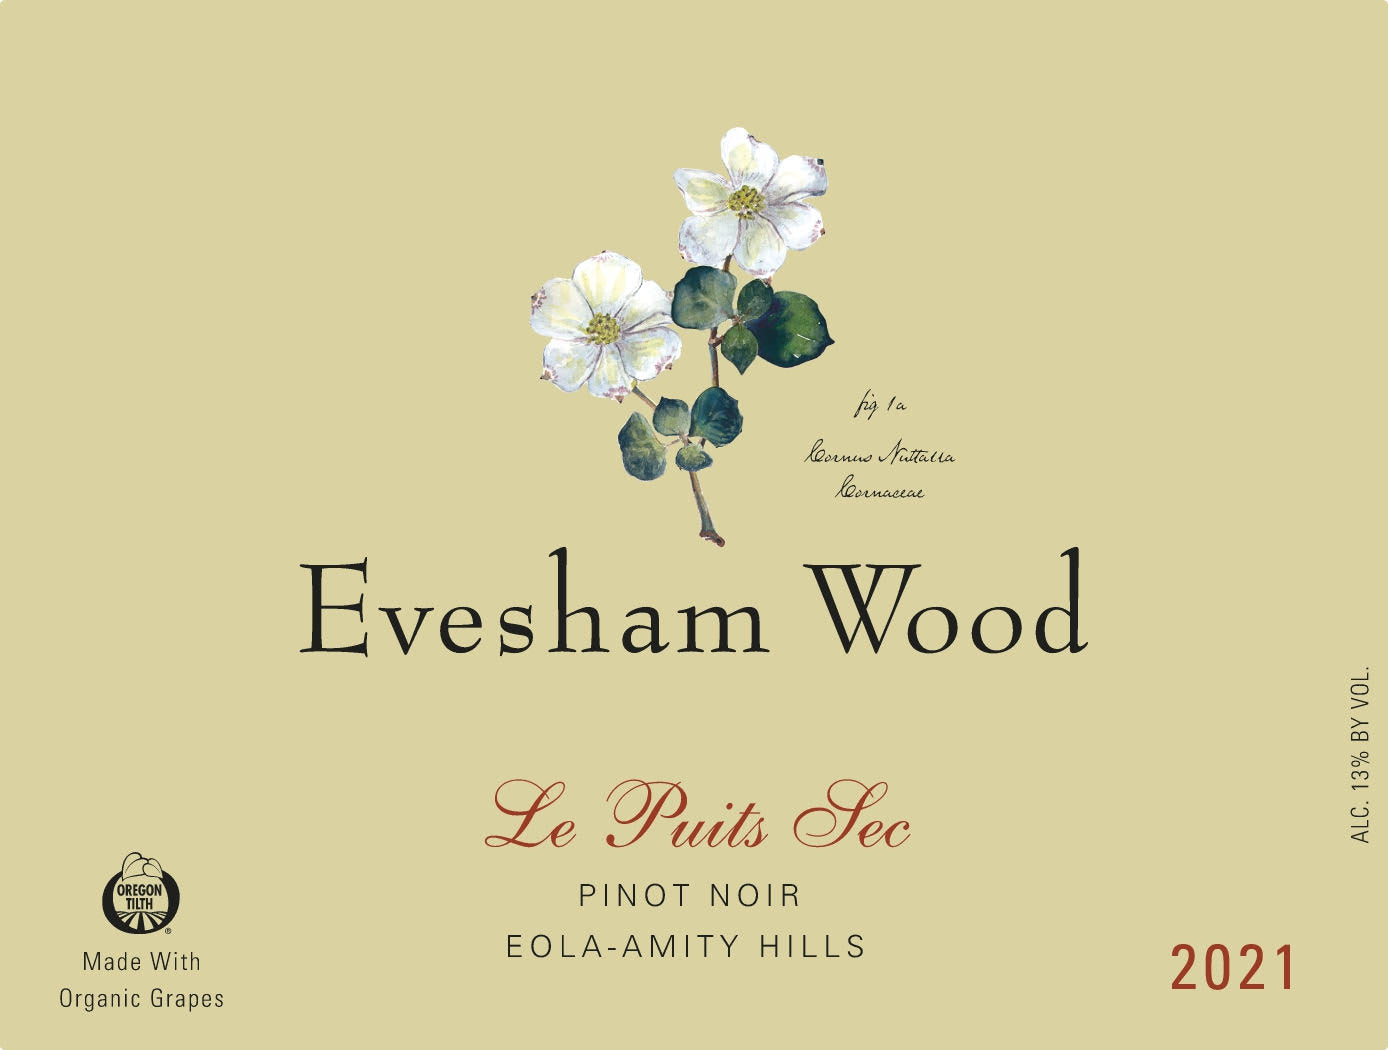 Evesham Wood Le Puits Sec Pinot Noir 2021